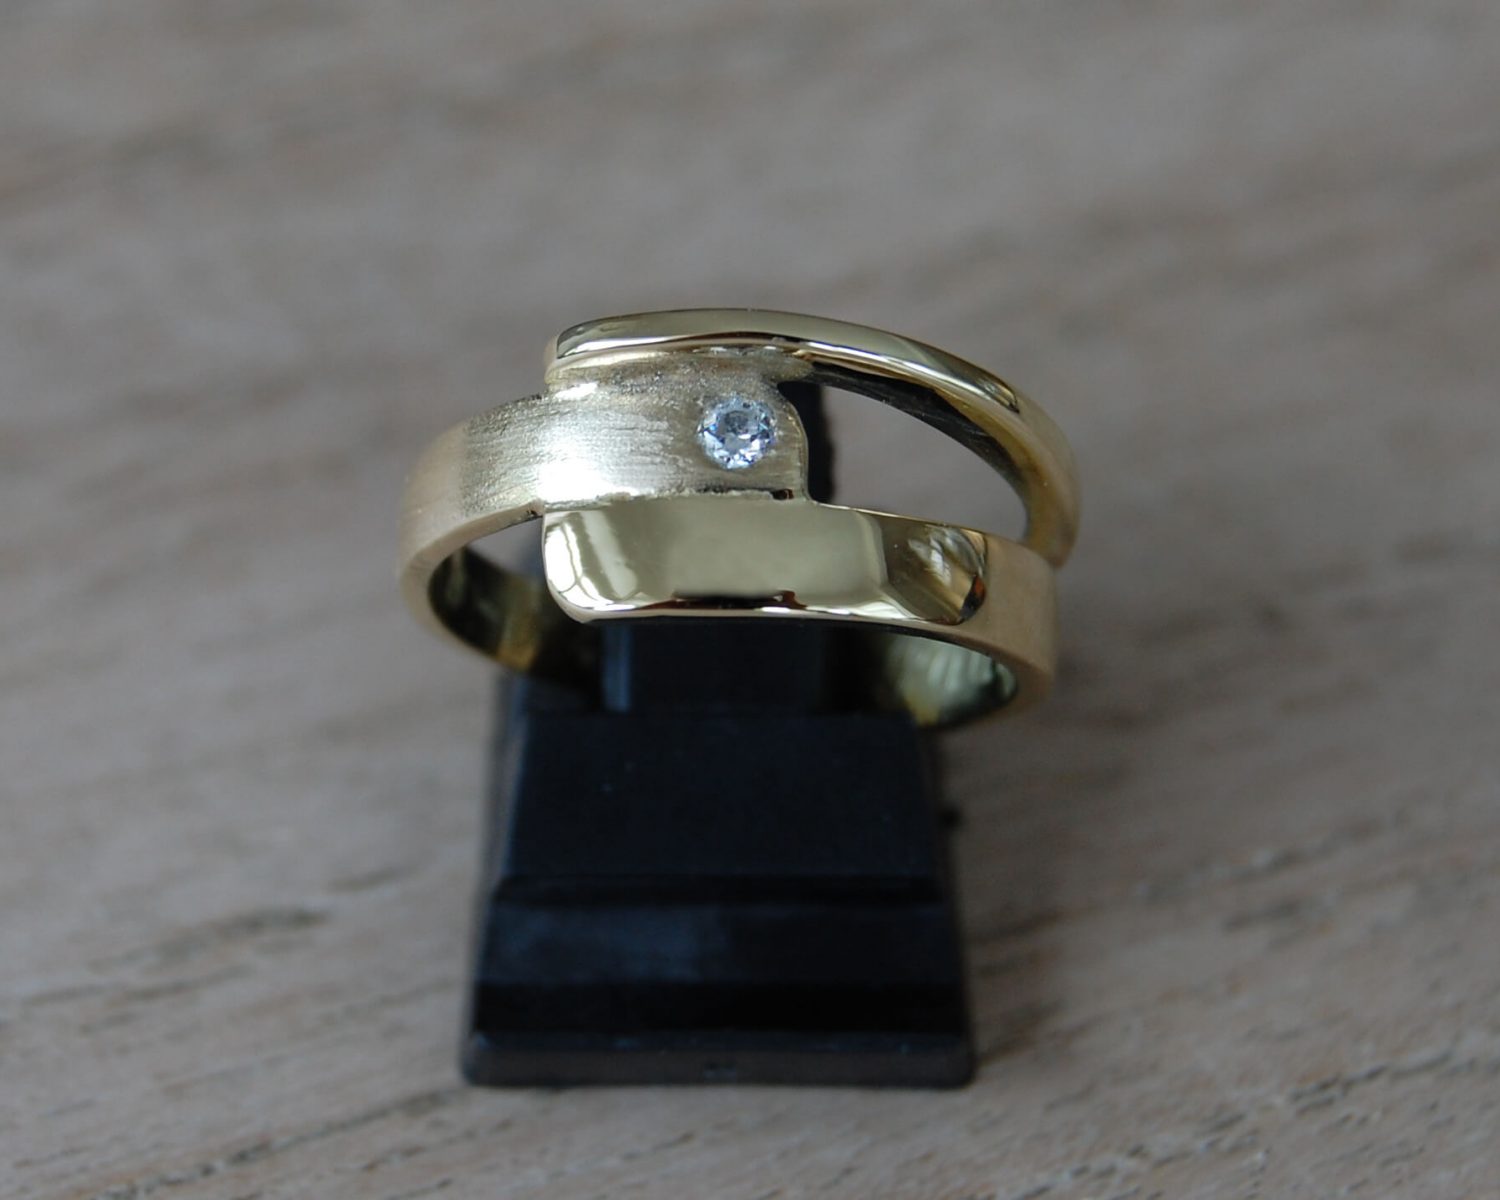 Ring gemaakt uit aangeleverde trouwringen - inclusief zirkonia. Aan de binnenzijde van de ring is een bakje gemaakt, gevuld met wat as.